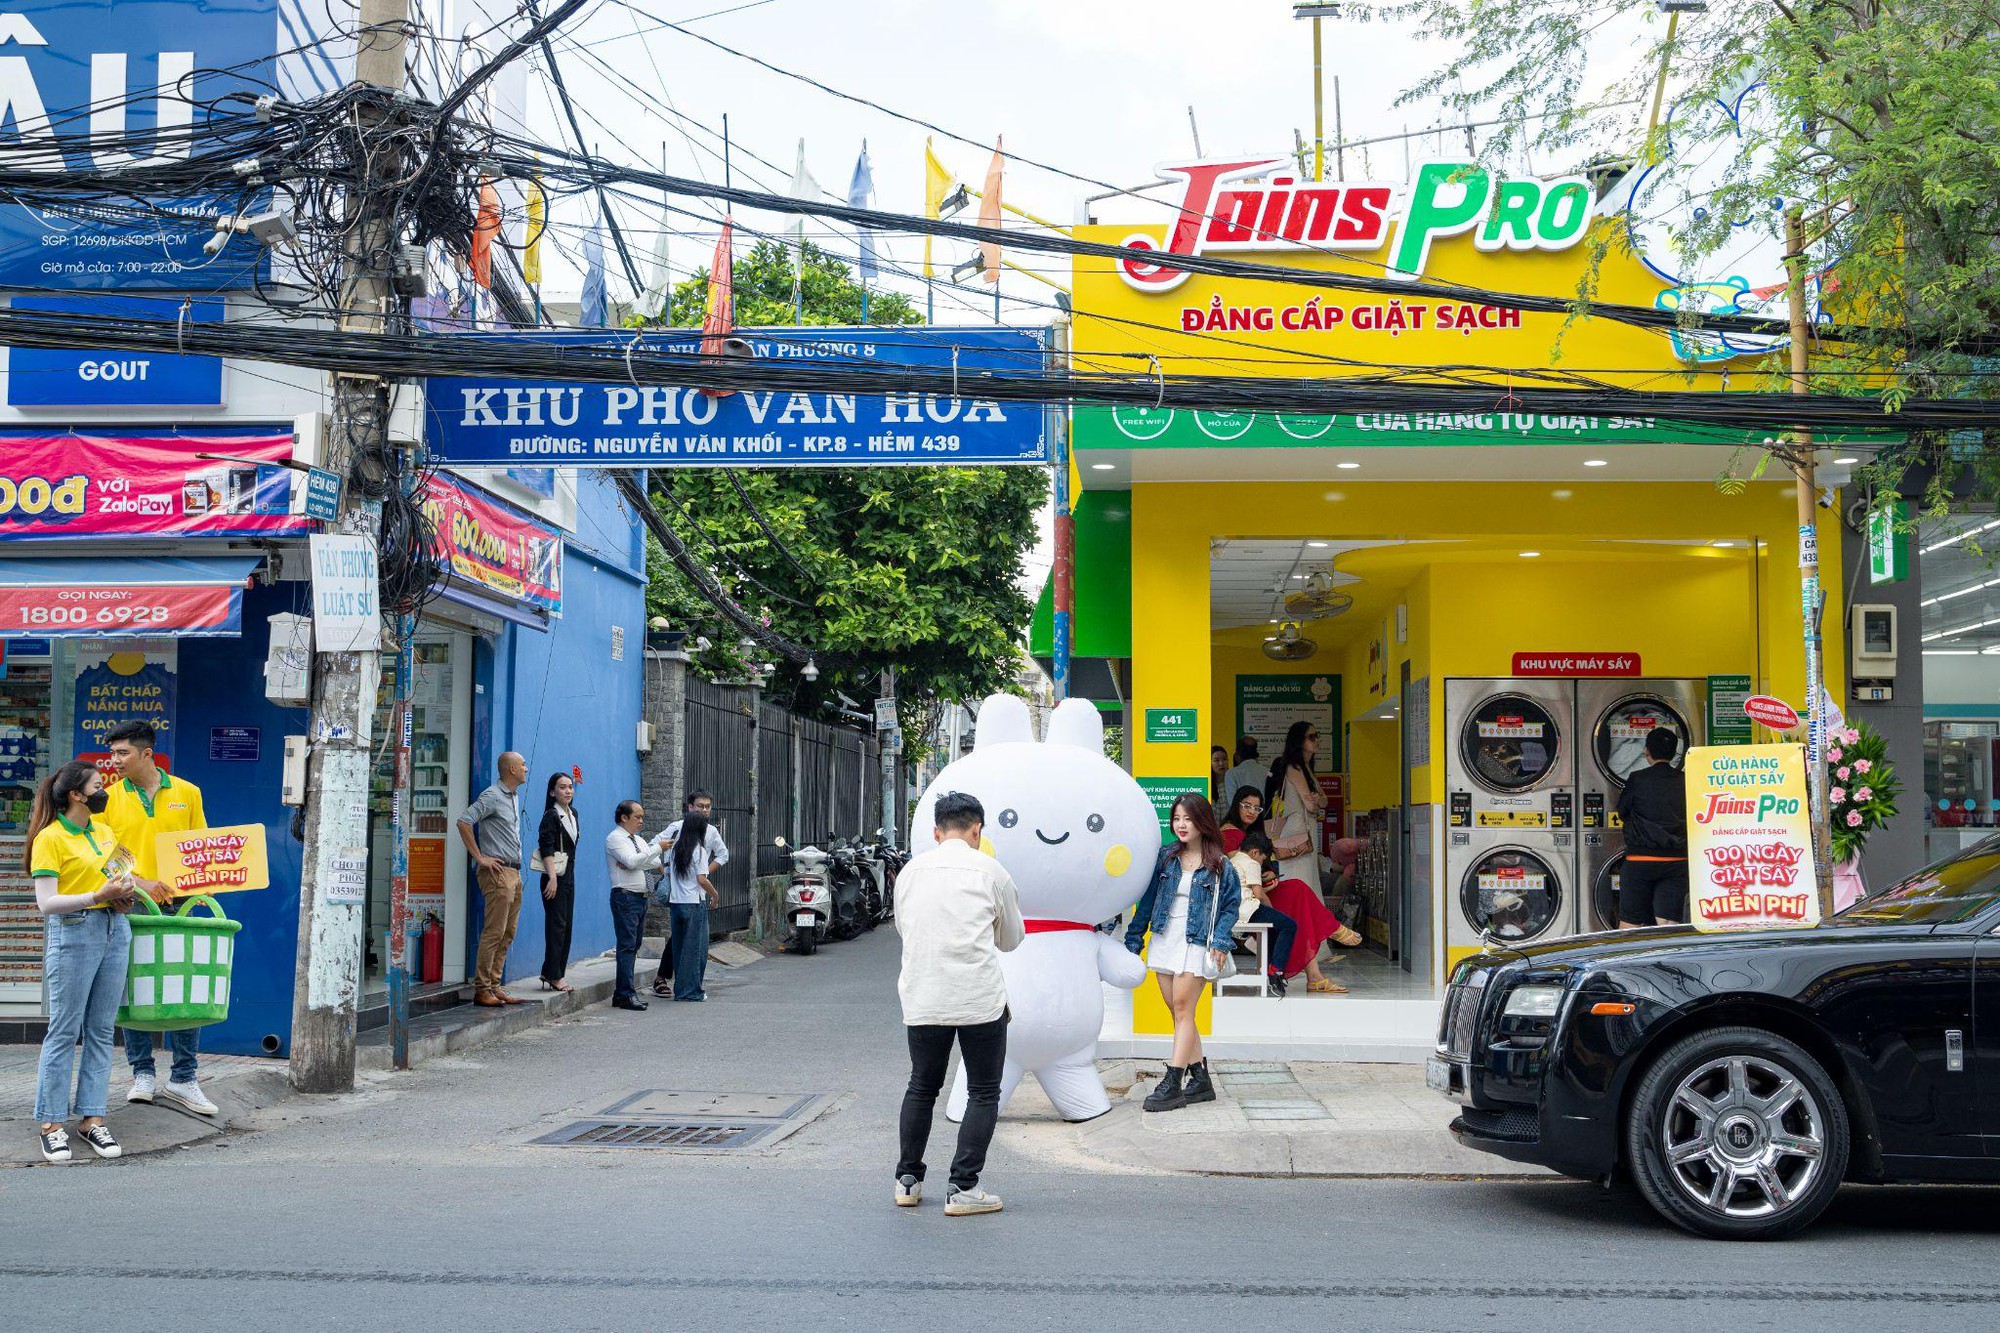 Masan đồng loạt khai trương nhiều cửa hàng tự giặt sấy đầu tiên tại Việt Nam - Joins Pro - Ảnh 1.